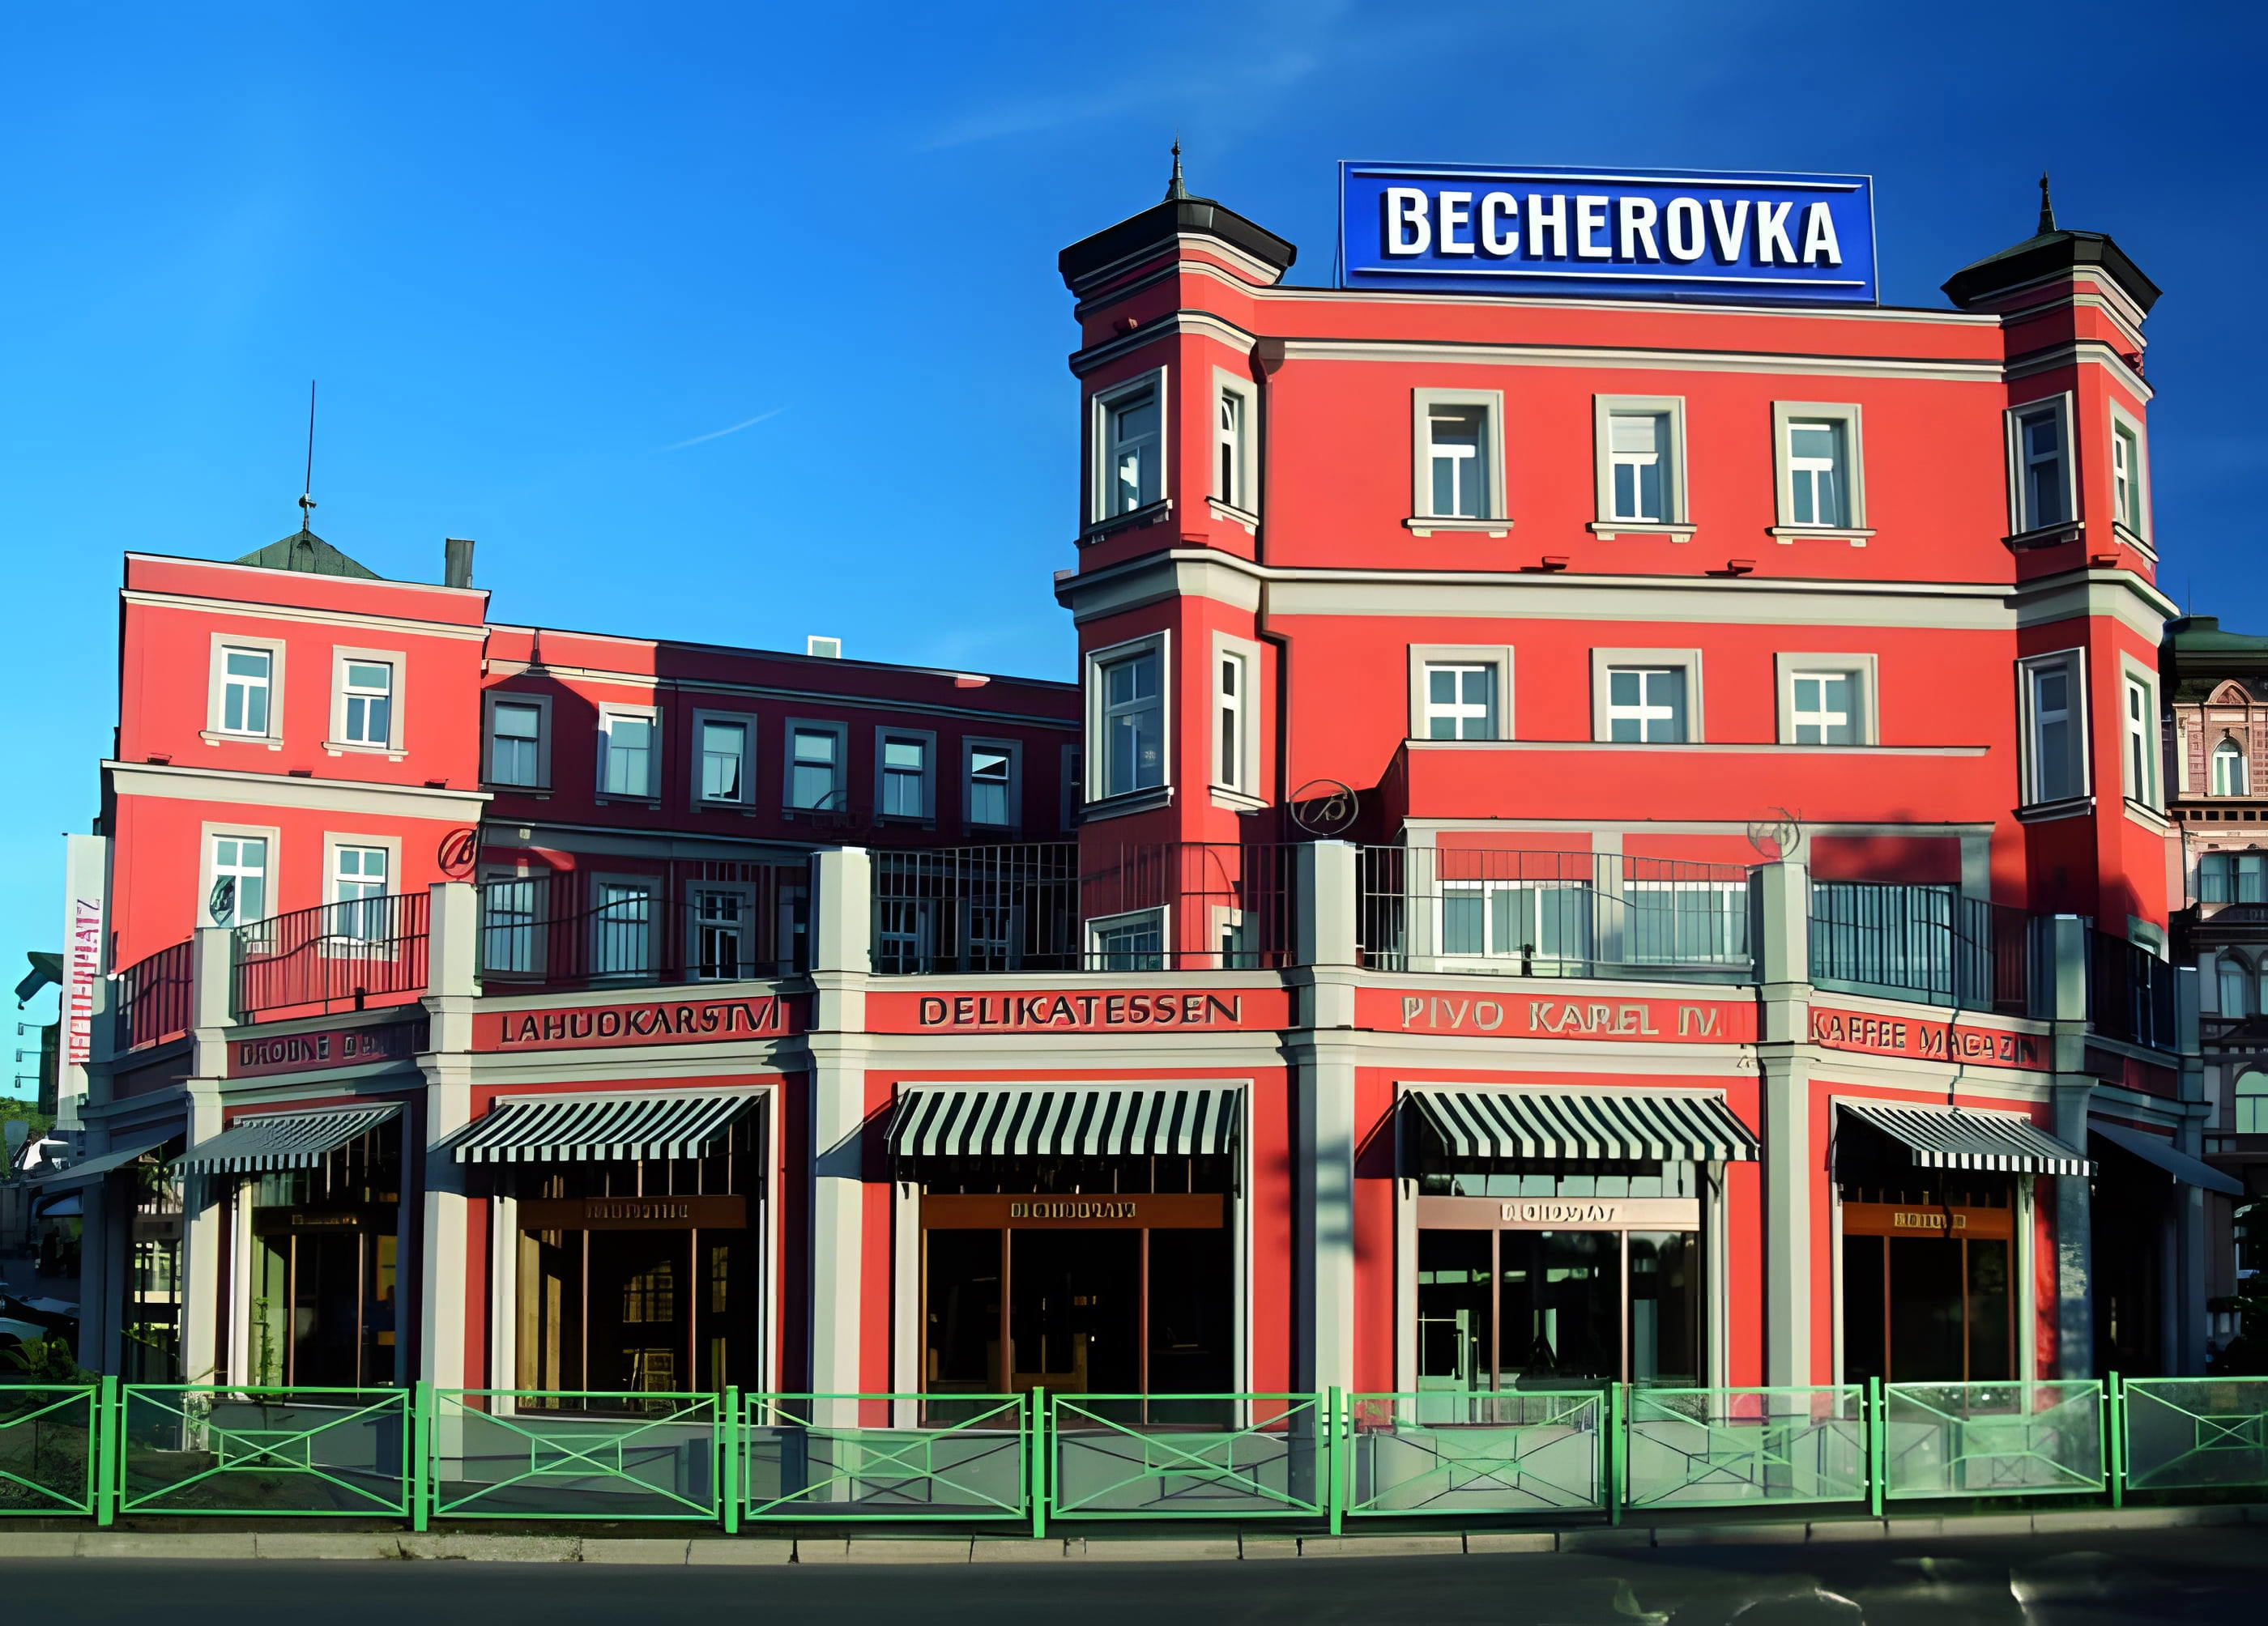 ,,Třináctý pramen" - Návštěvnické centrum Becherovka